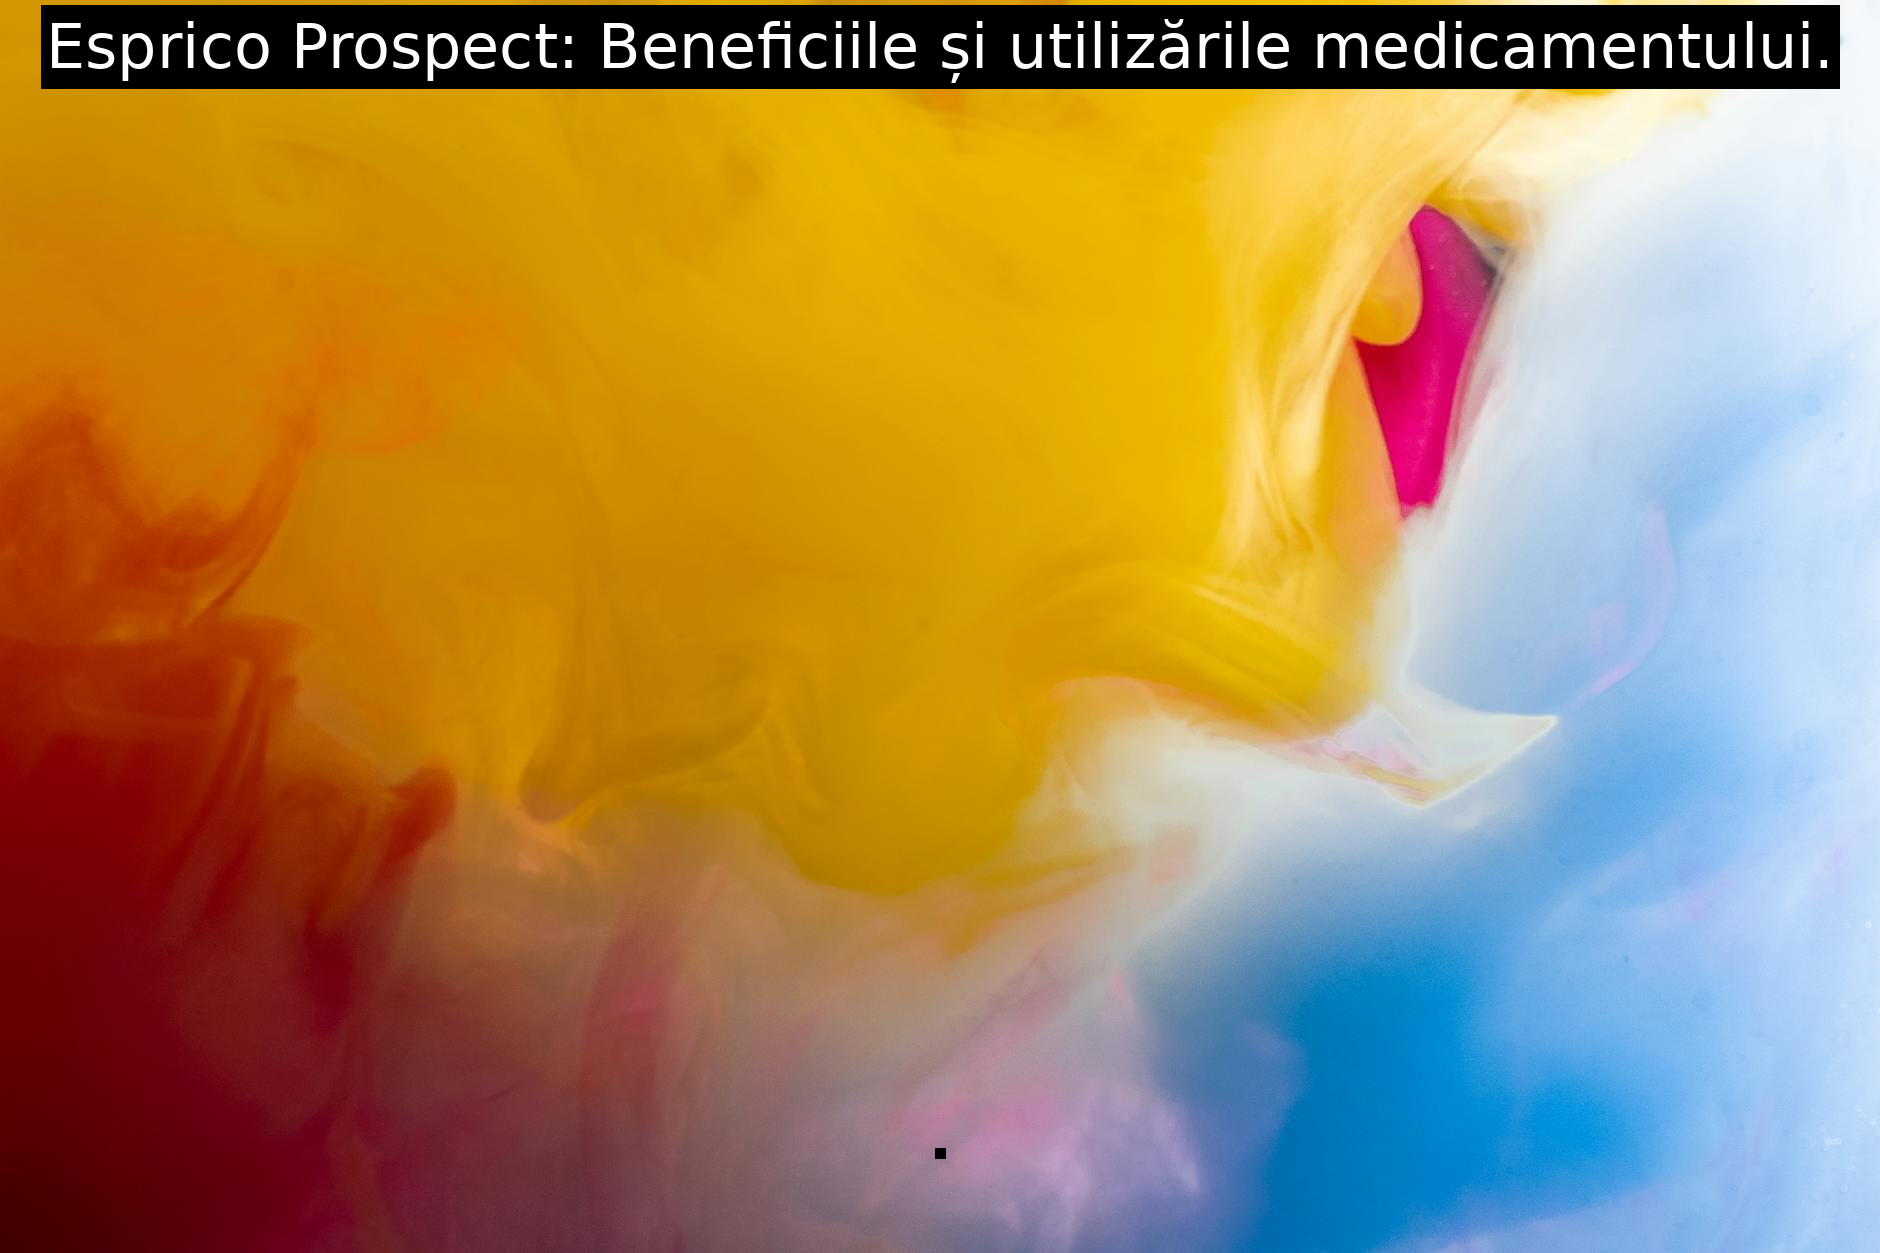 Esprico Prospect: Beneficiile și utilizările medicamentului.